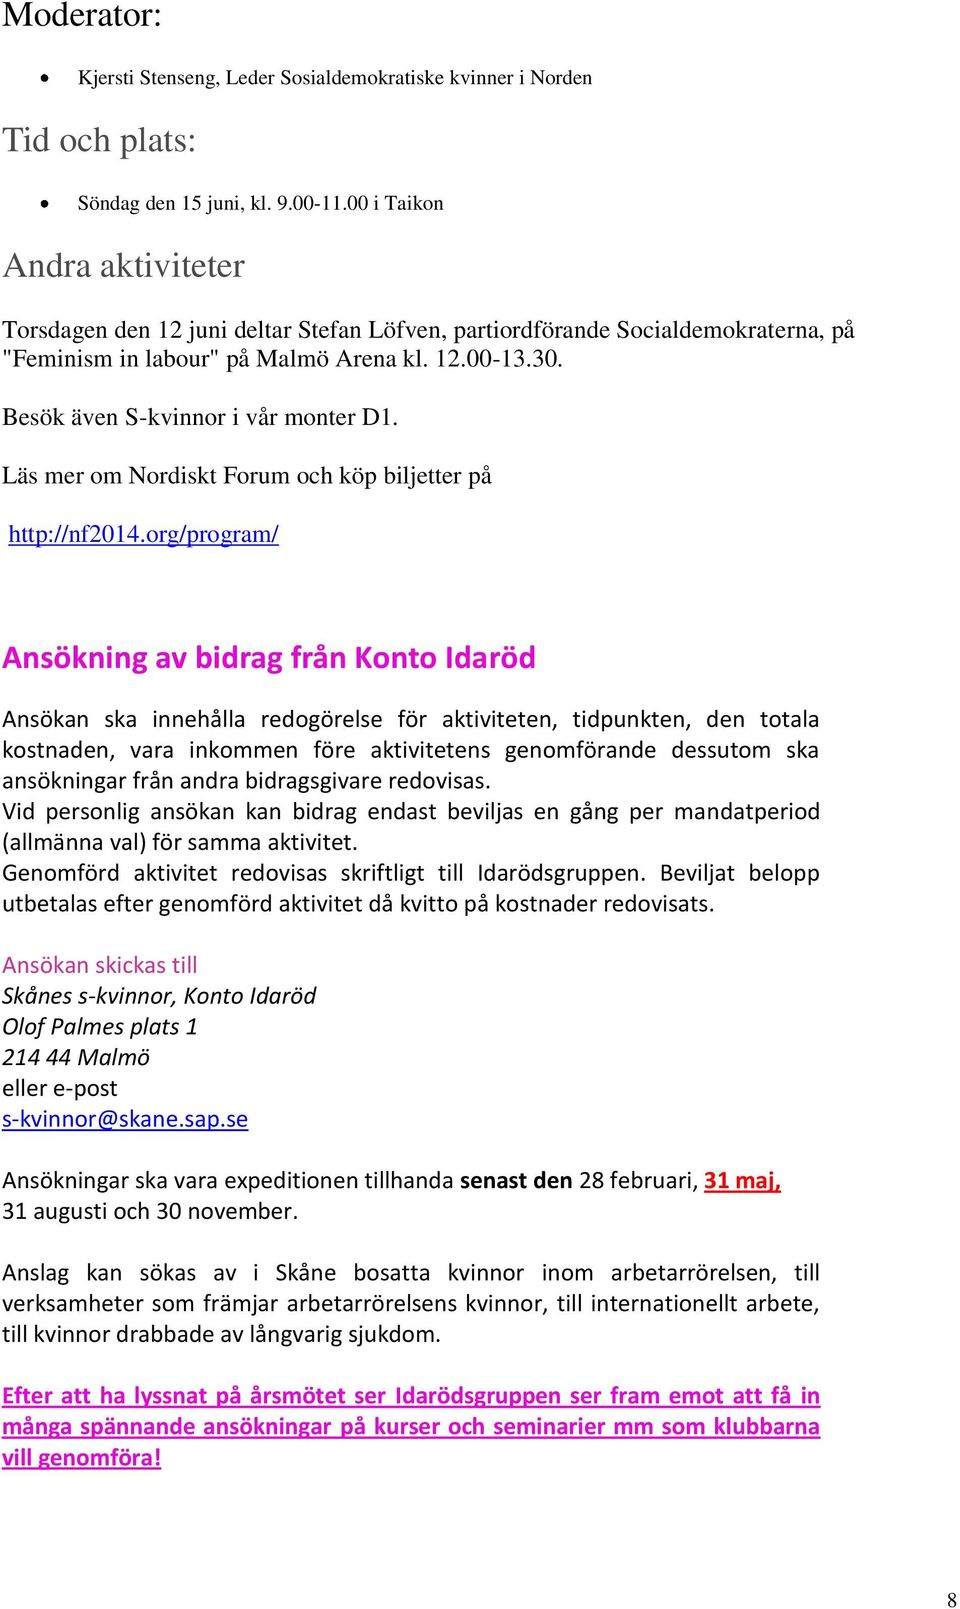 Besök även S-kvinnor i vår monter D1. Läs mer om Nordiskt Forum och köp biljetter på http://nf2014.